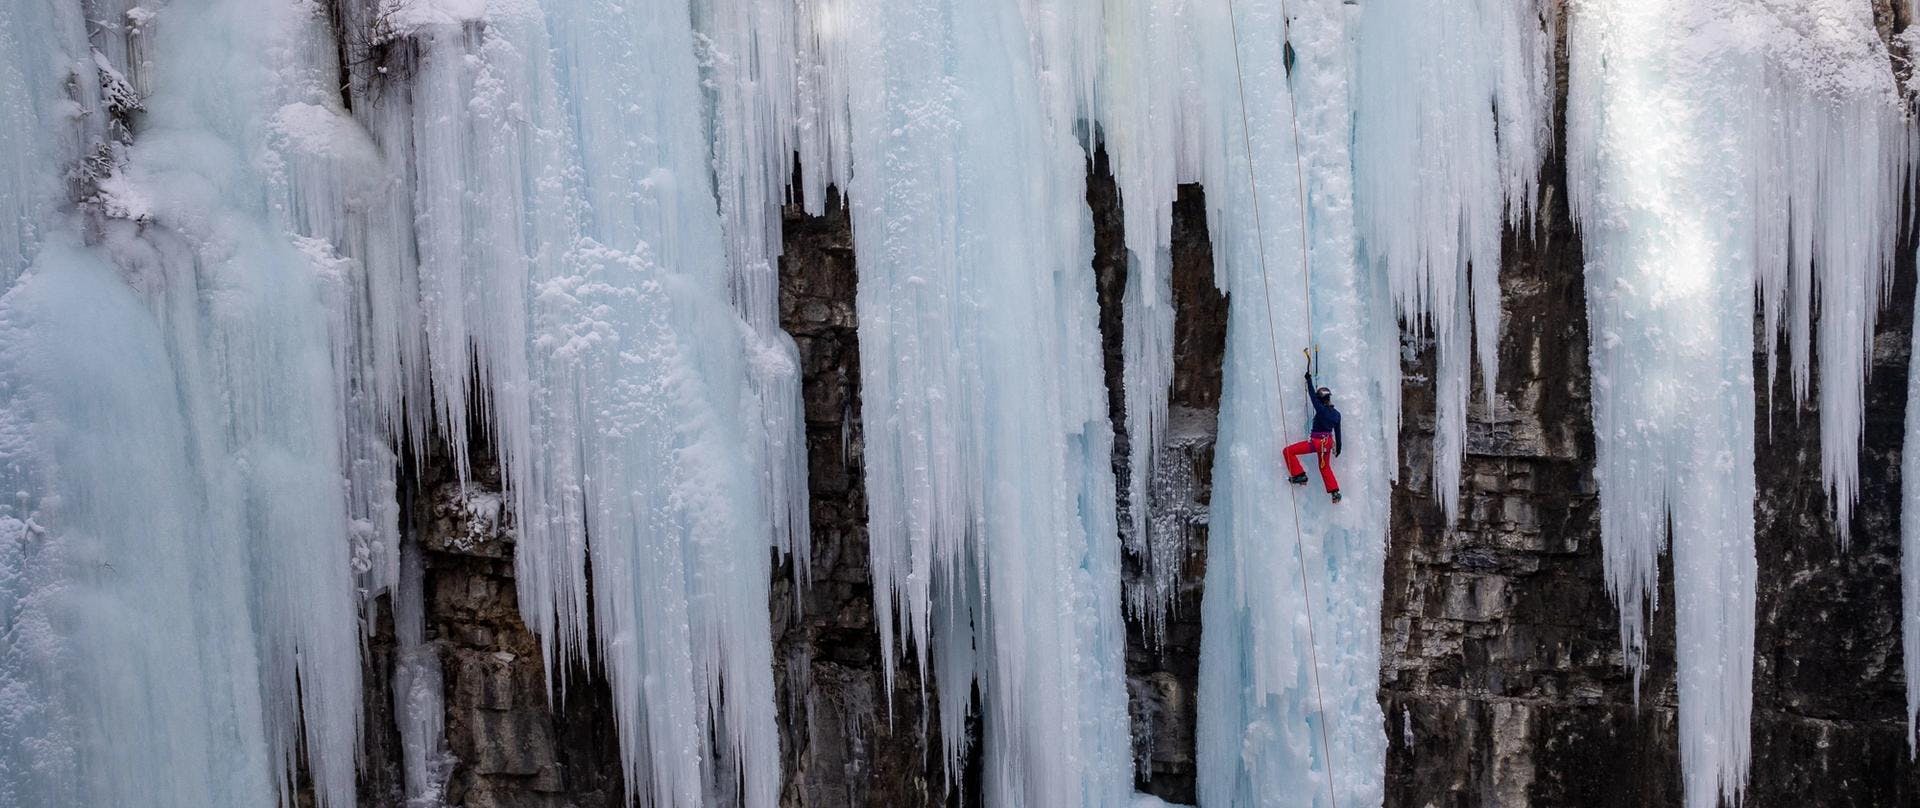 Ice climbing at Pyhä’s Tajukangas